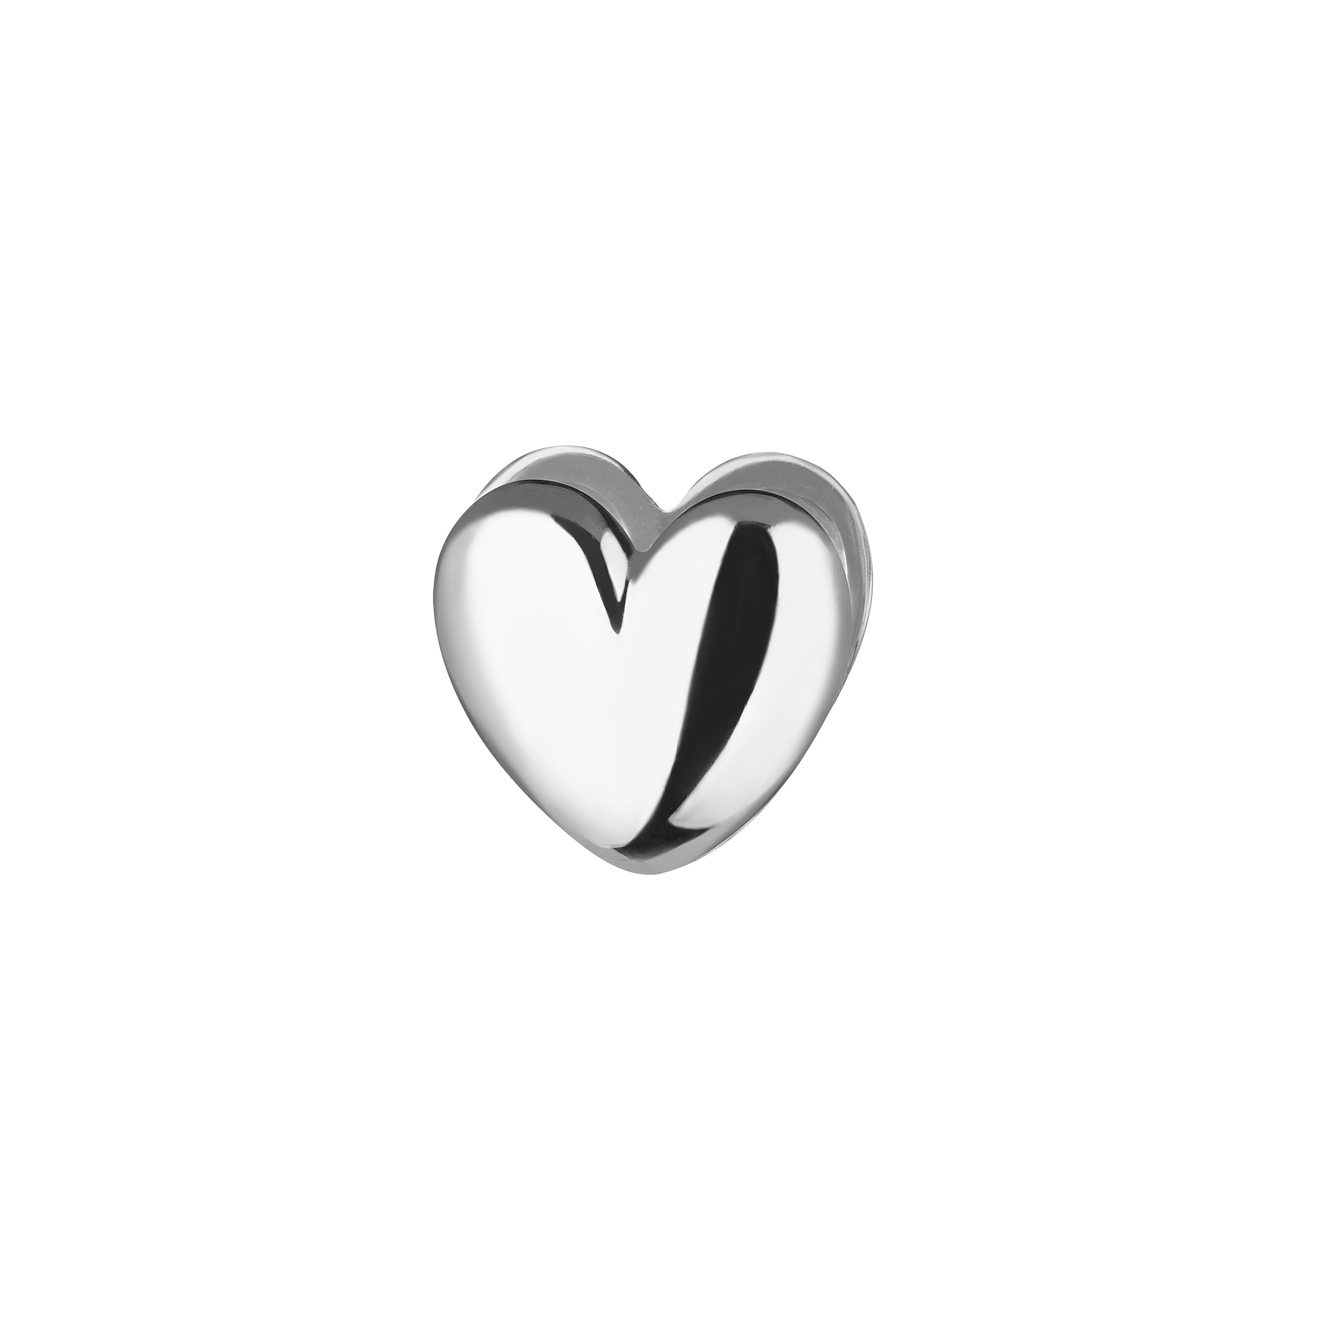 Ms. Marble Моносерьга-сердце Prem из серебра ms marble позолоченный браслет из серебра с мятой деталью legacy